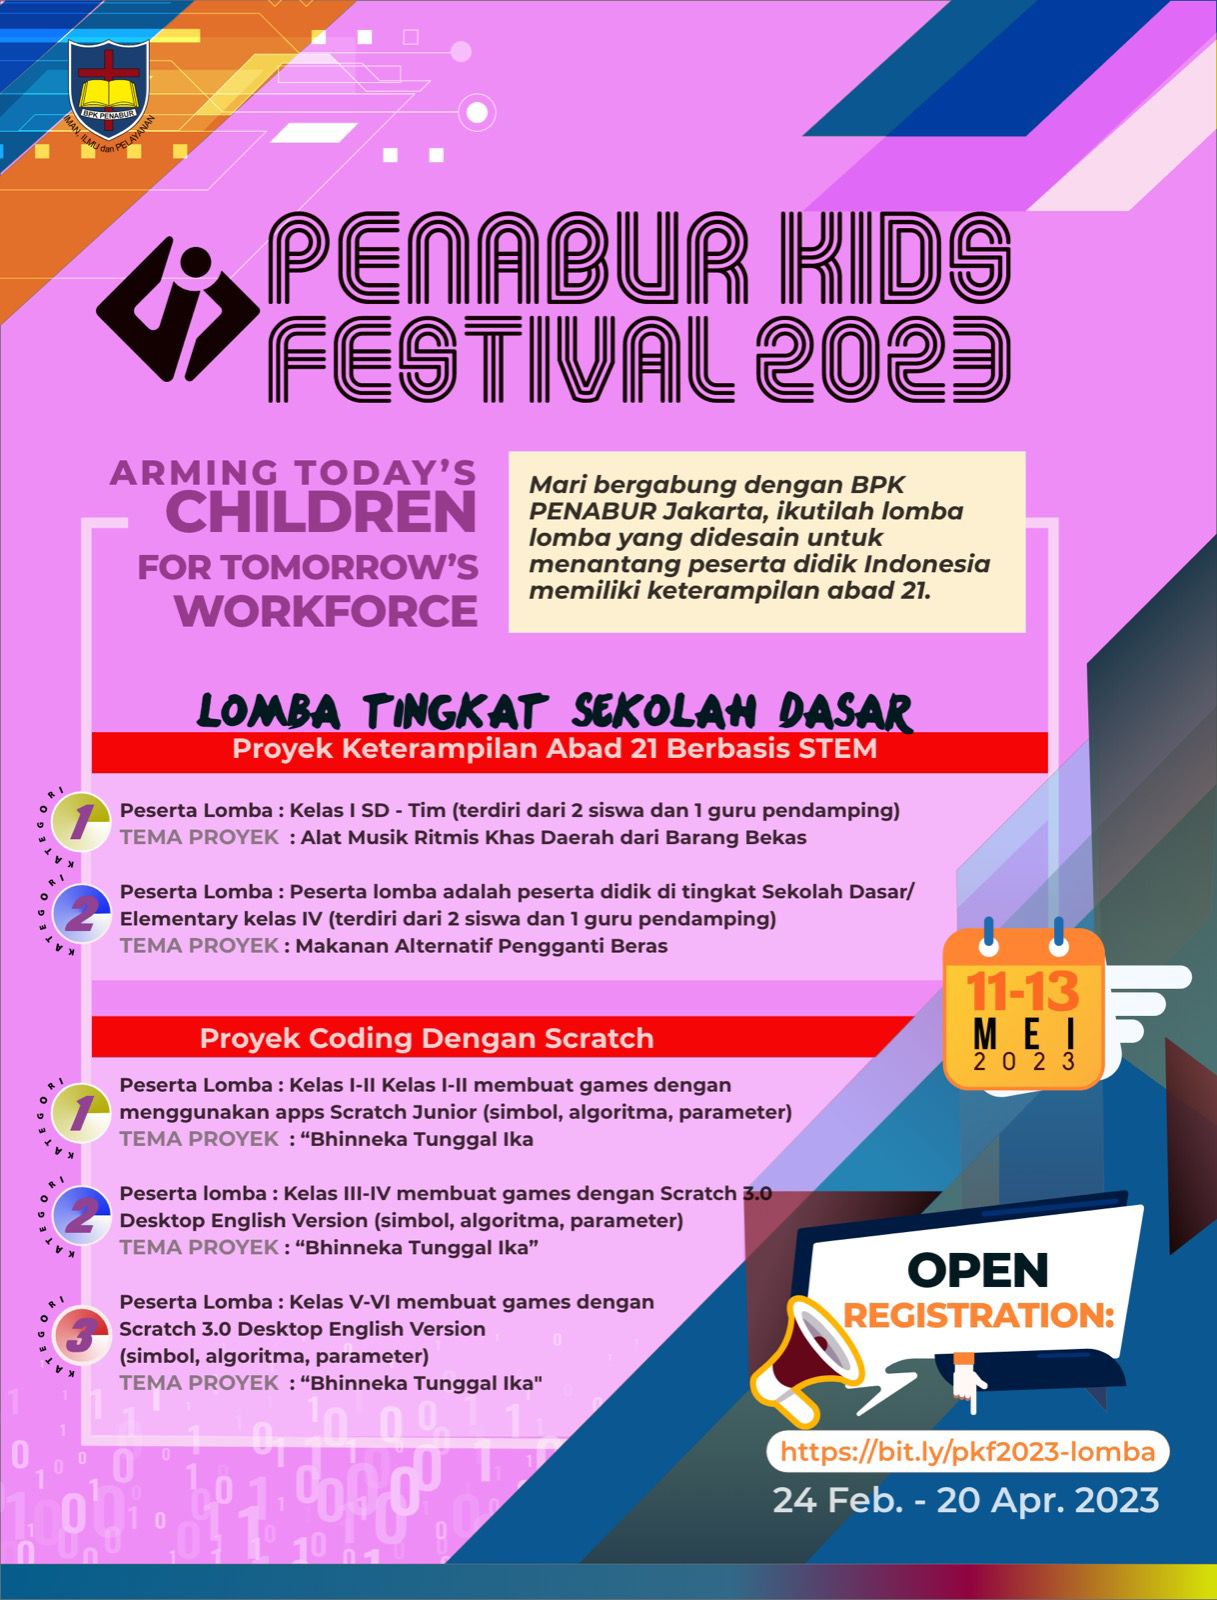 PENABUR Kids Festival 2023 "Arming Today's Children for Tomorrow's Workforce" Tingkat Sekolah Dasar